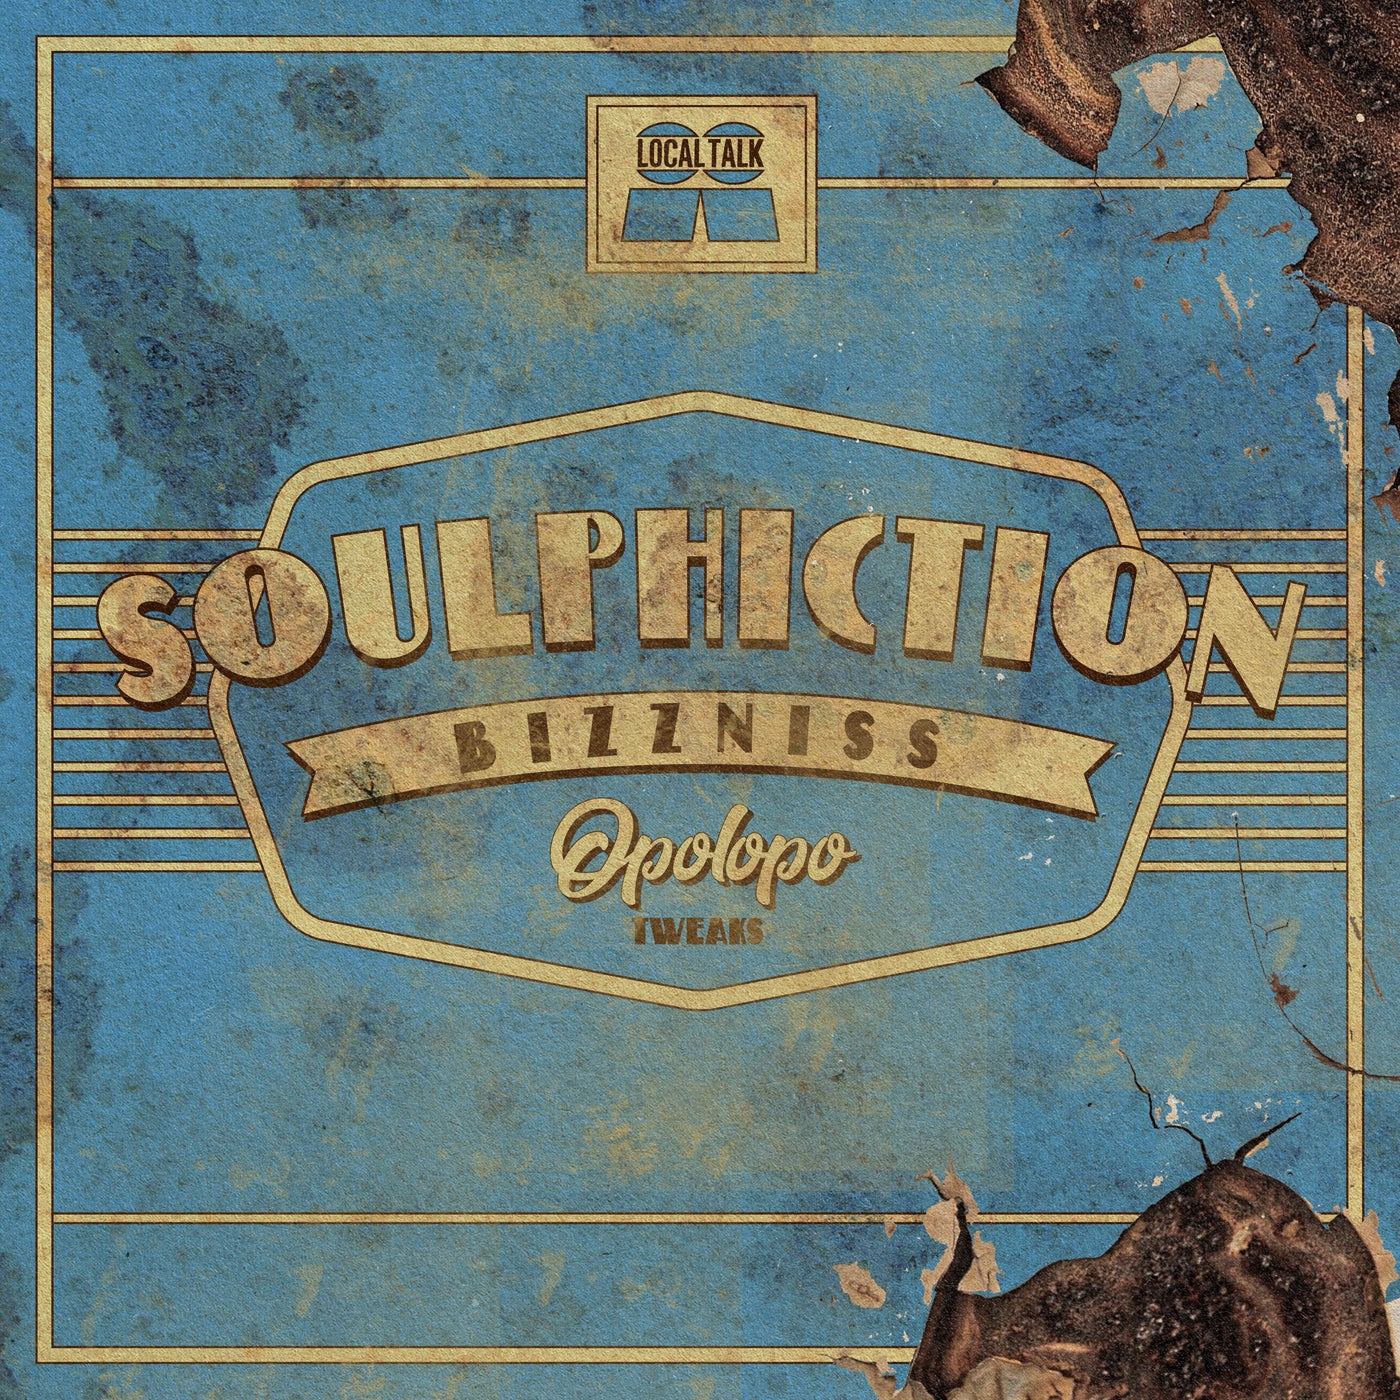 Download Soulphiction - Bizzness (OPOLOPO Tweak) on Electrobuzz